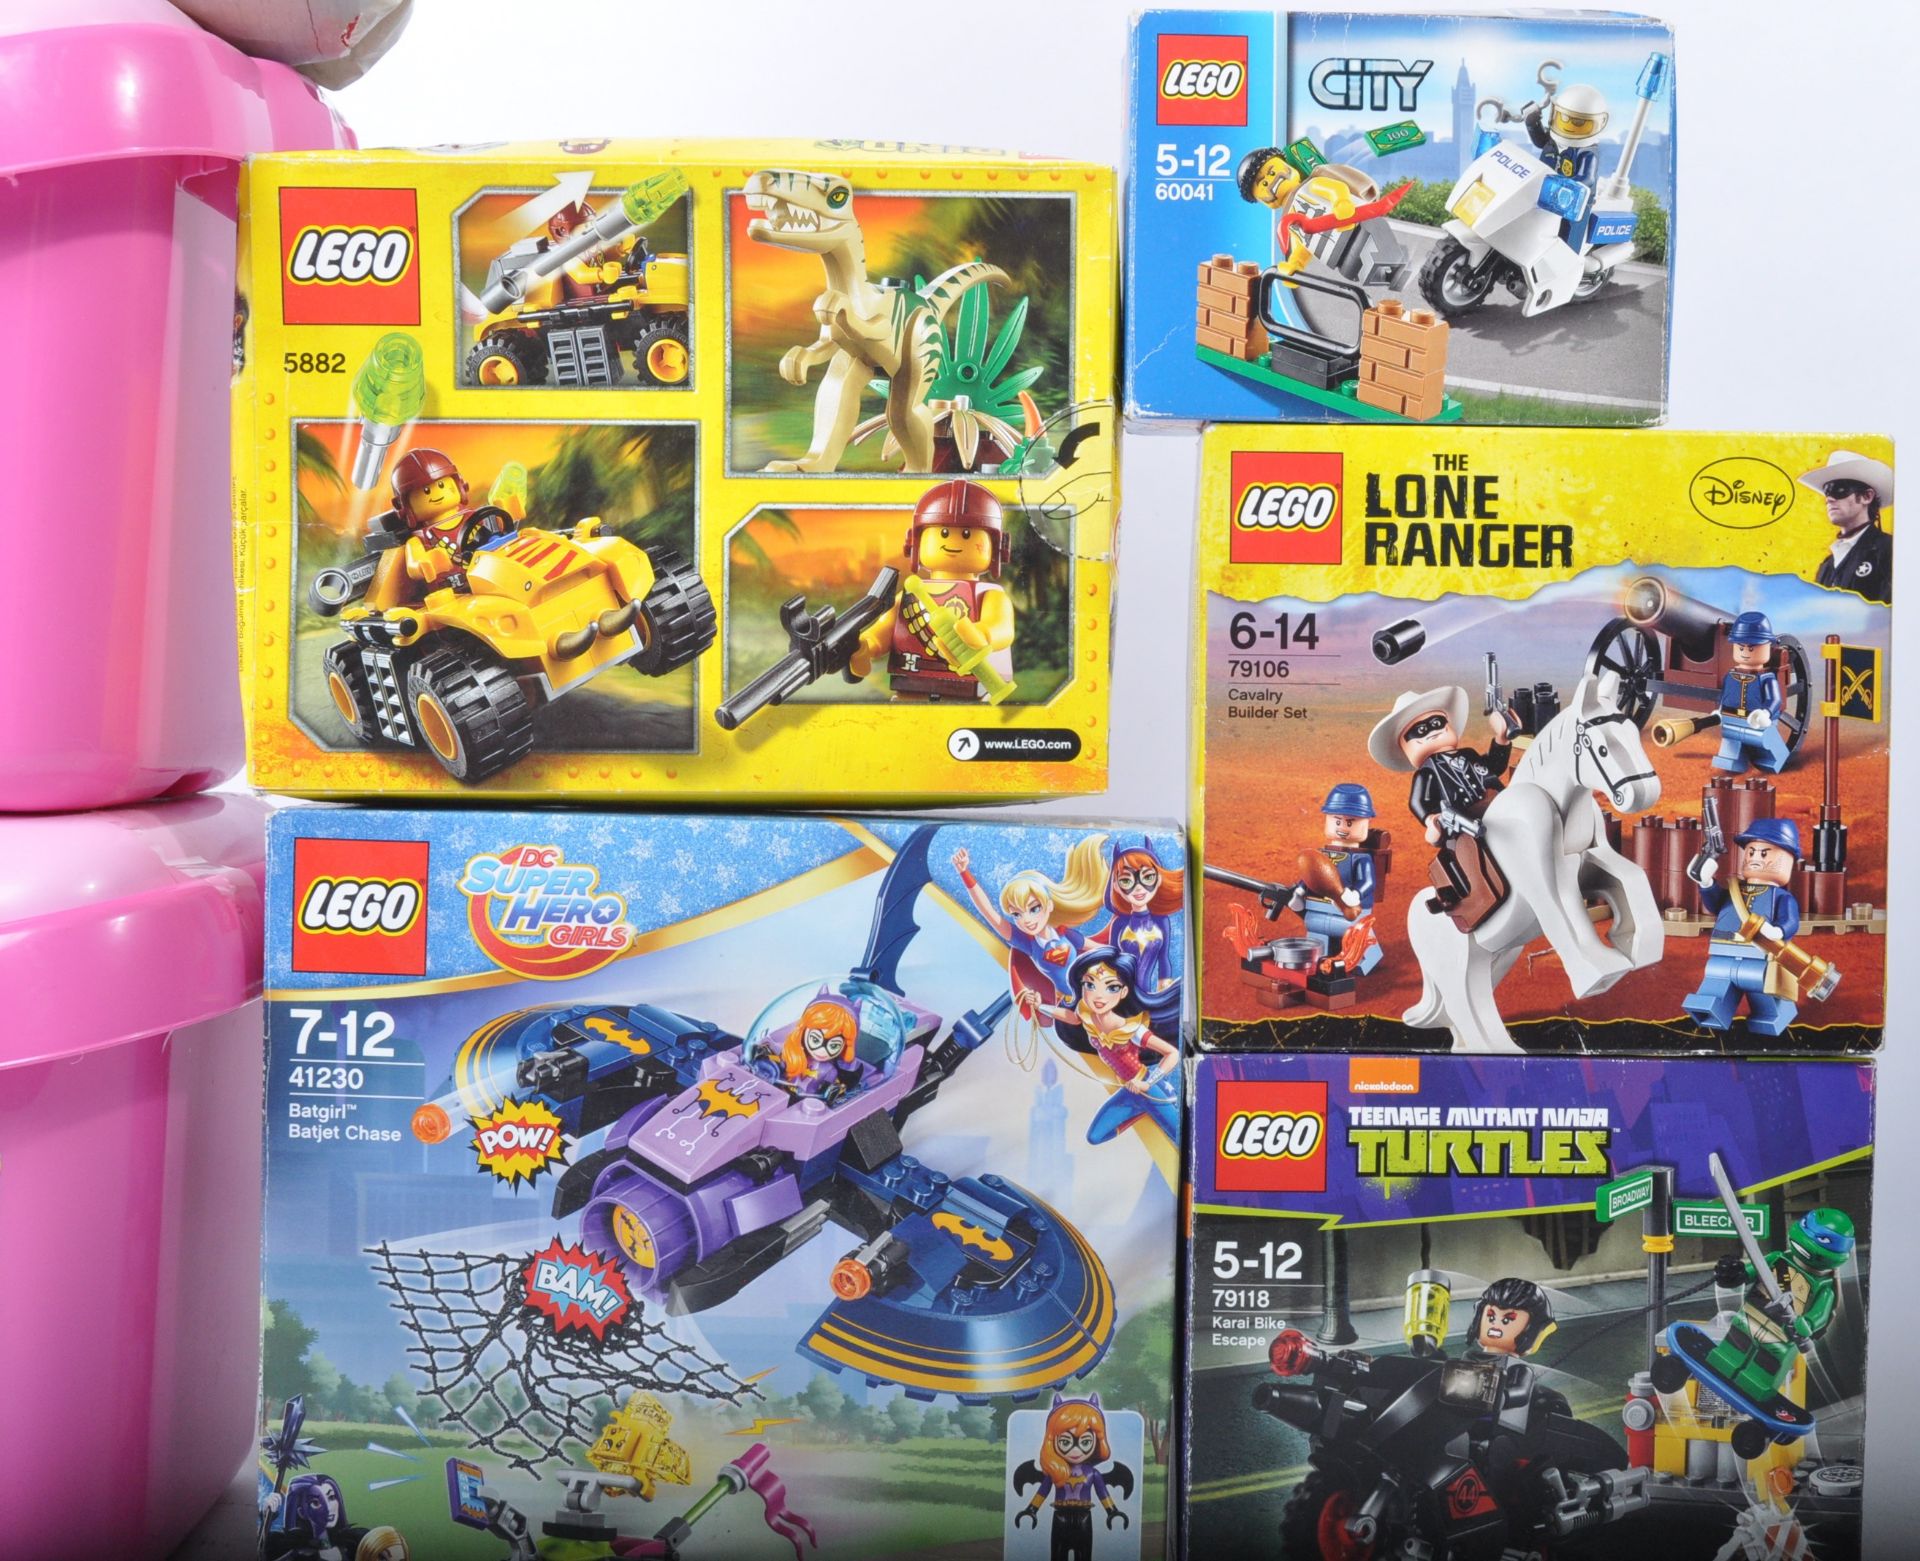 LEGO SETS - 41230 / 79118 / 60041 / 79106 / 5882 / 4625 / 5585 / 7900 - Image 4 of 5